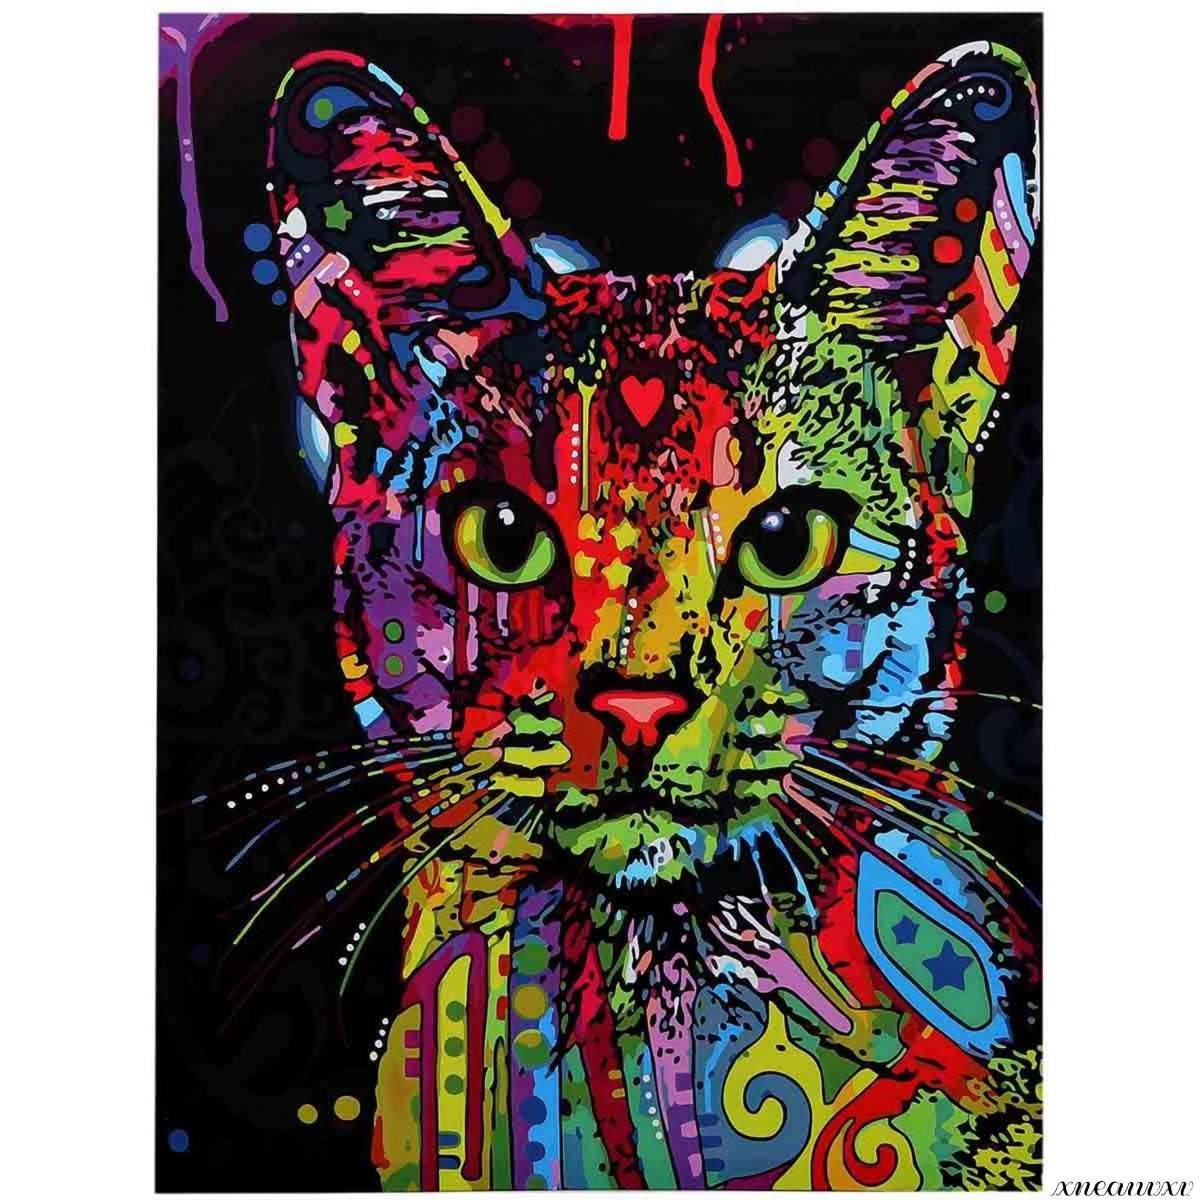 귀여운 아트 패널 고양이 다채로운 인테리어 벽 교수형 방 장식 장식 그림 캔버스 포스터 그림 자연 벽 예술 미술 미술, 삽화, 그림, 그래픽